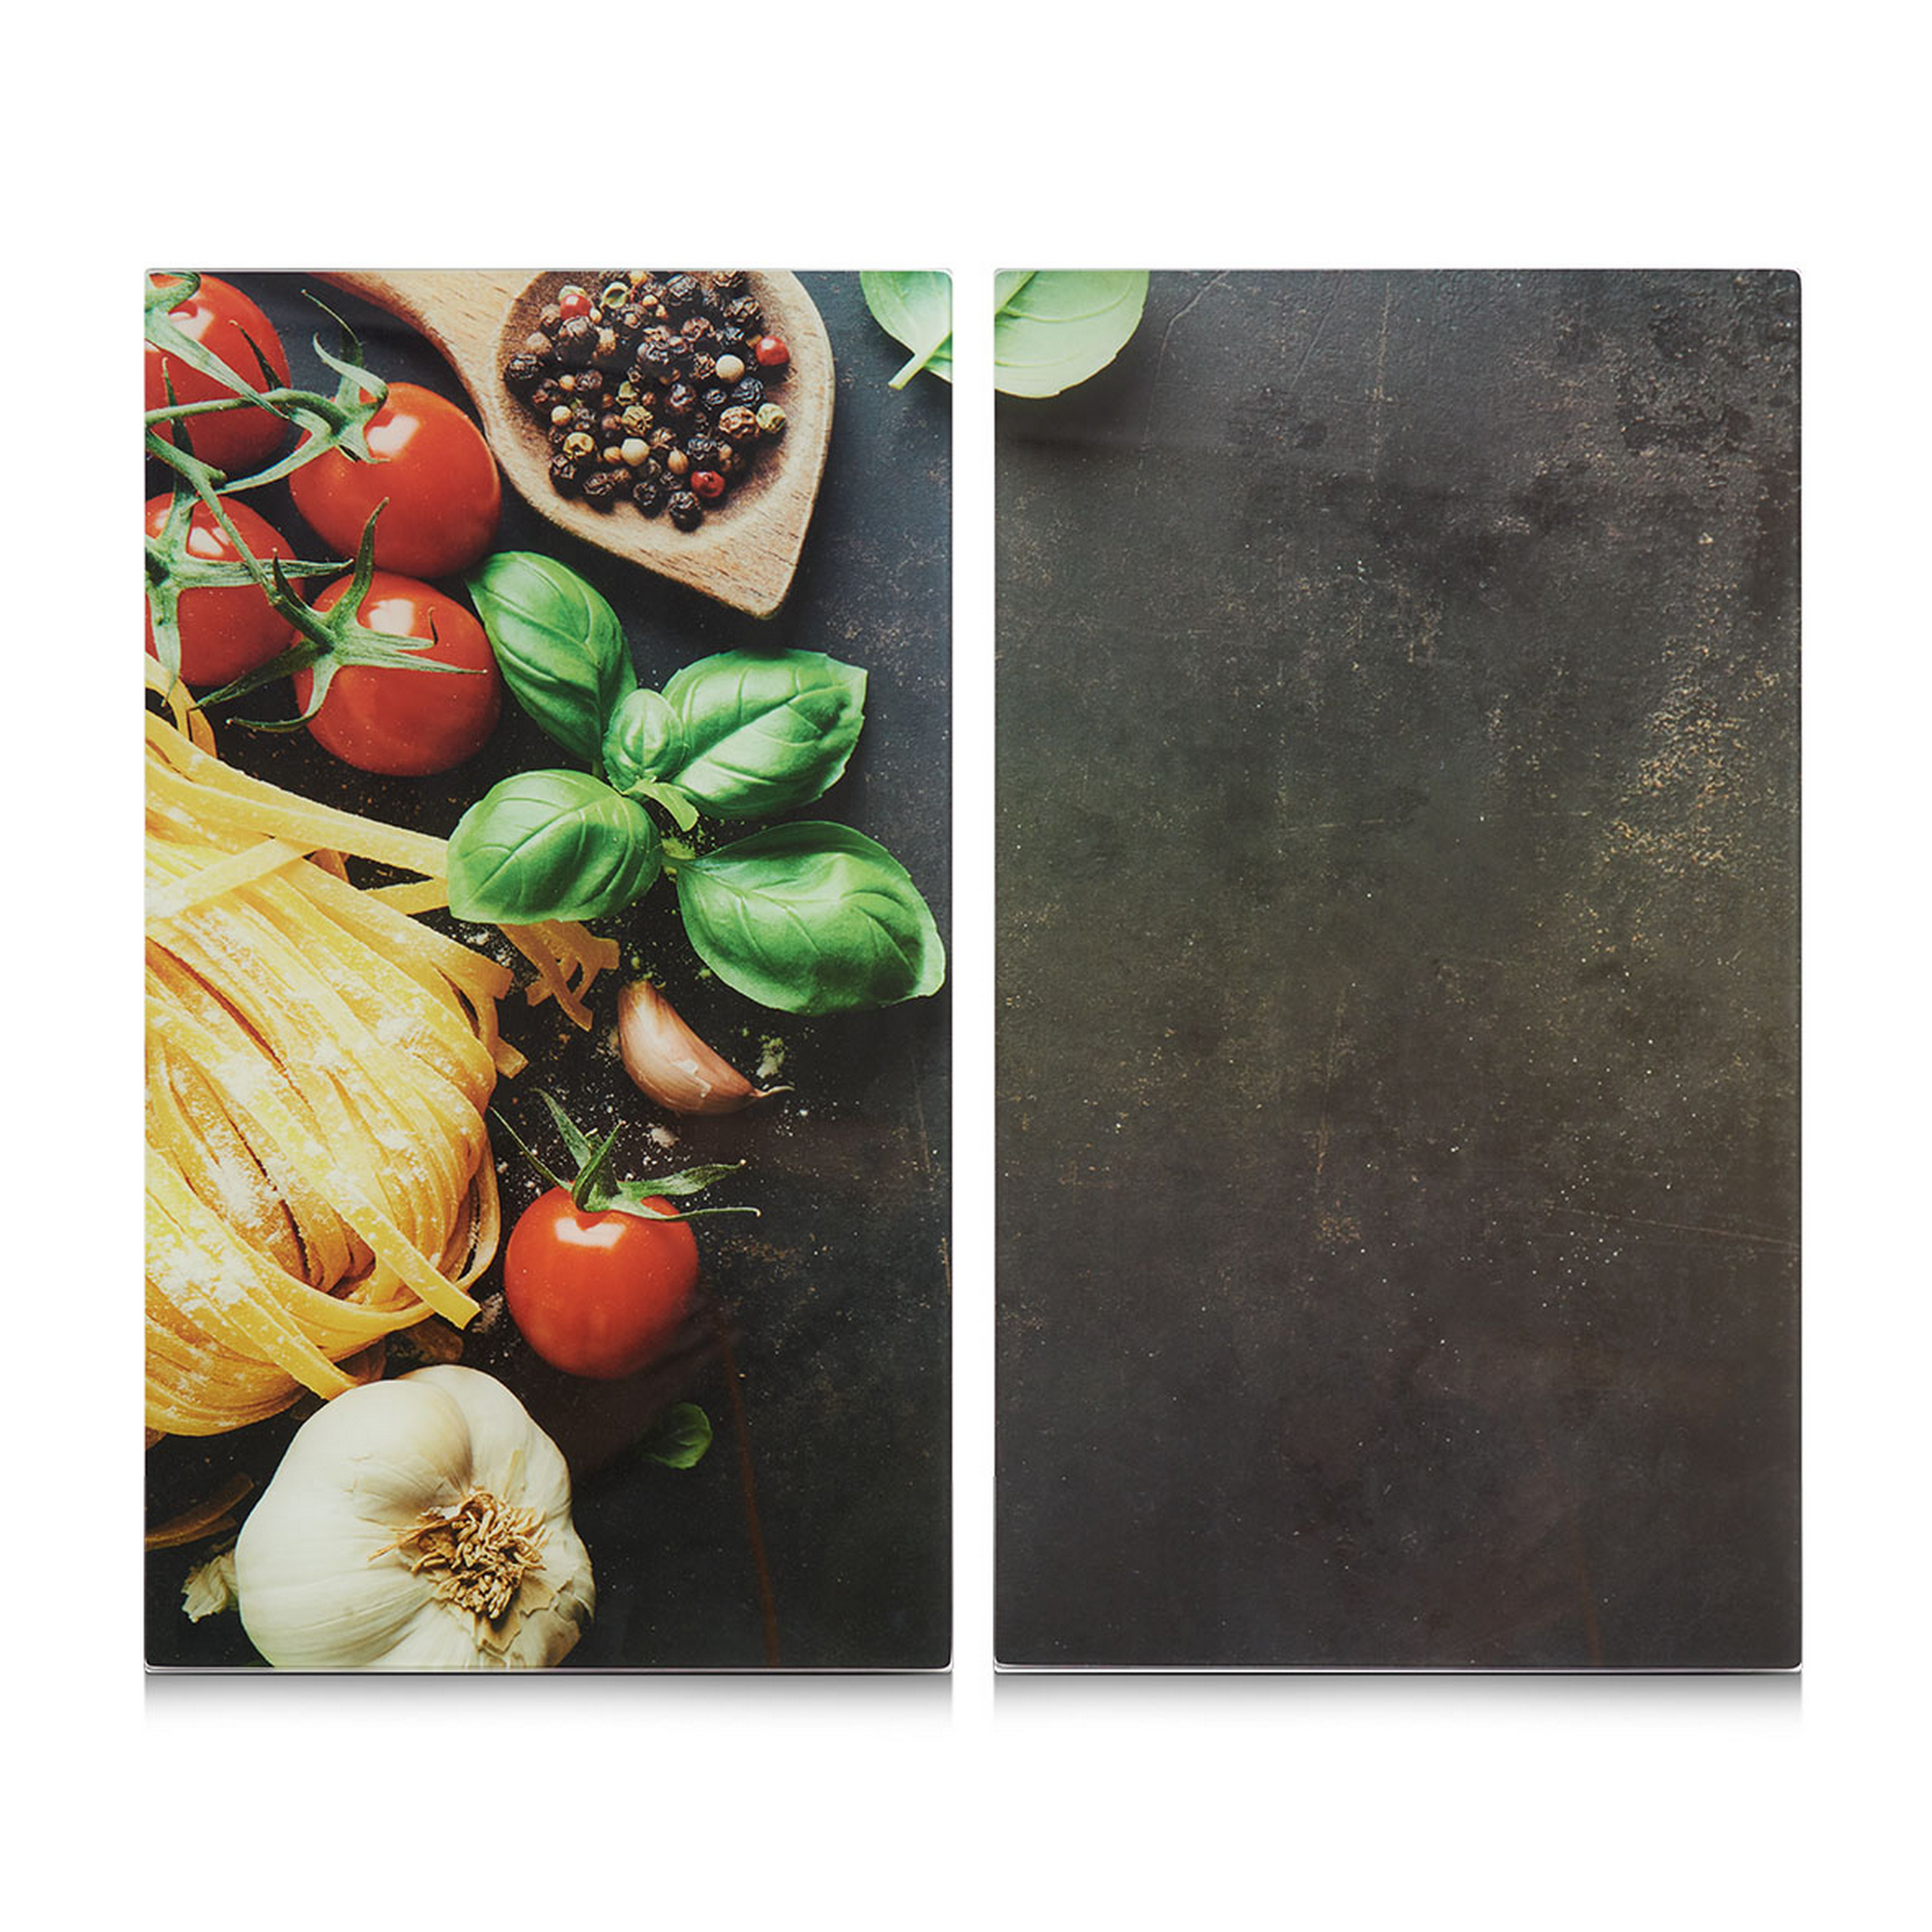 Schneidebrett 'Pasta' mehrfarbig 52 x 0,8 x 30 cm + product picture